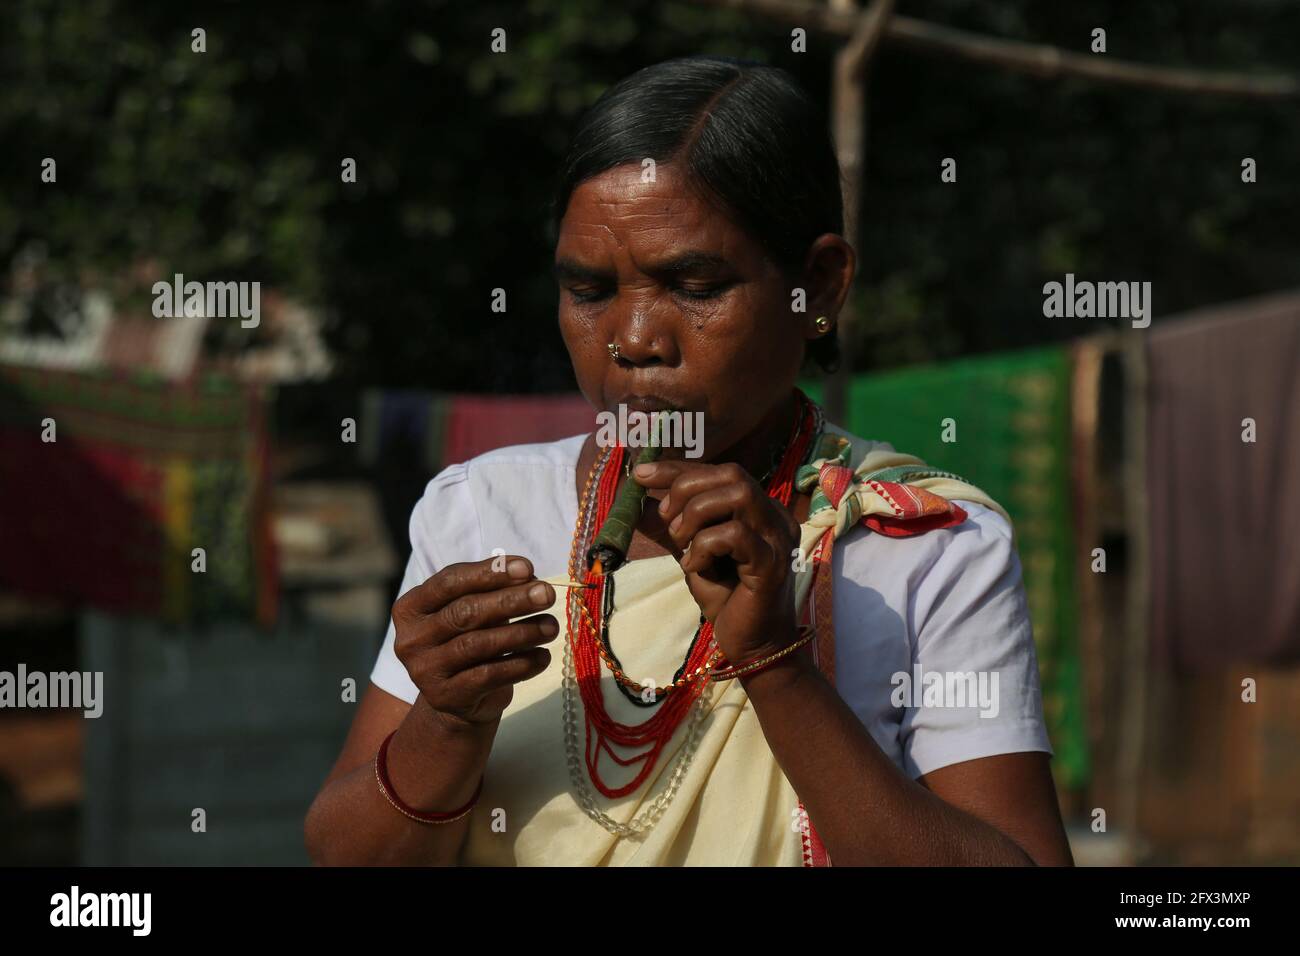 LANJIA SAORA TRIBE - donna tribale che fuma tubo di chilam fatto di foglie. Tondeggiante tappi di legno o taitalya in orecchie e Khagla e Jatong gioielli intorno a lei Foto Stock